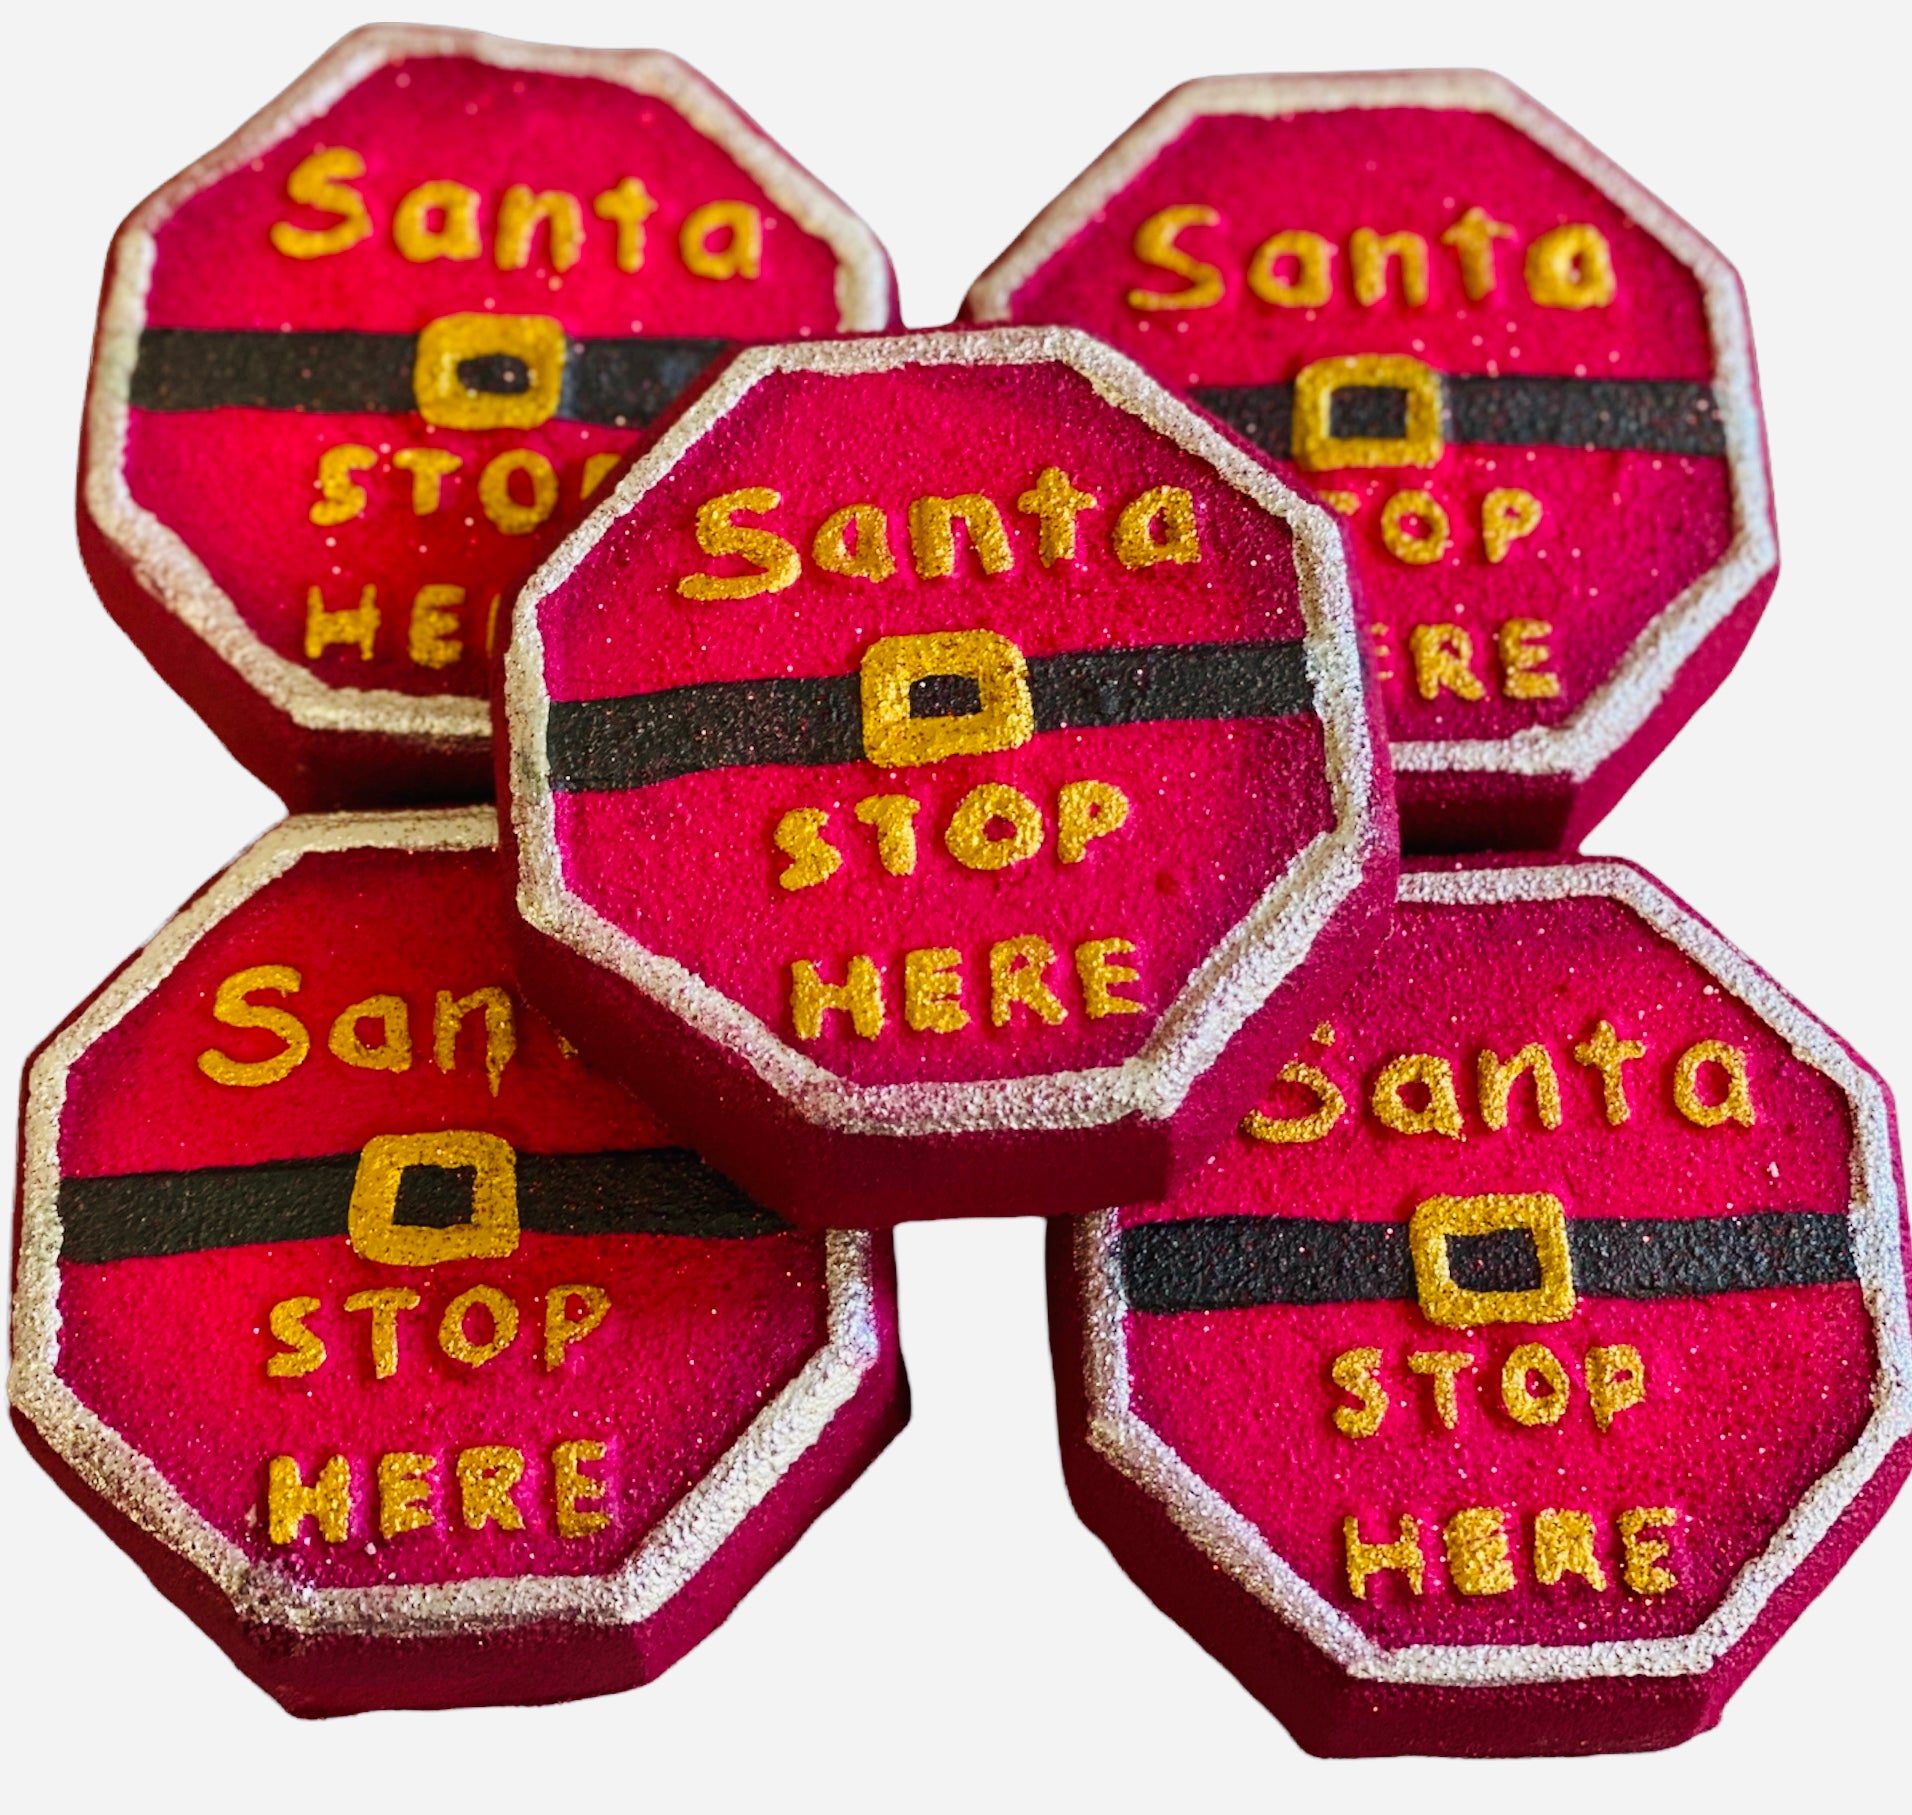 Santa stop sign bath bomb